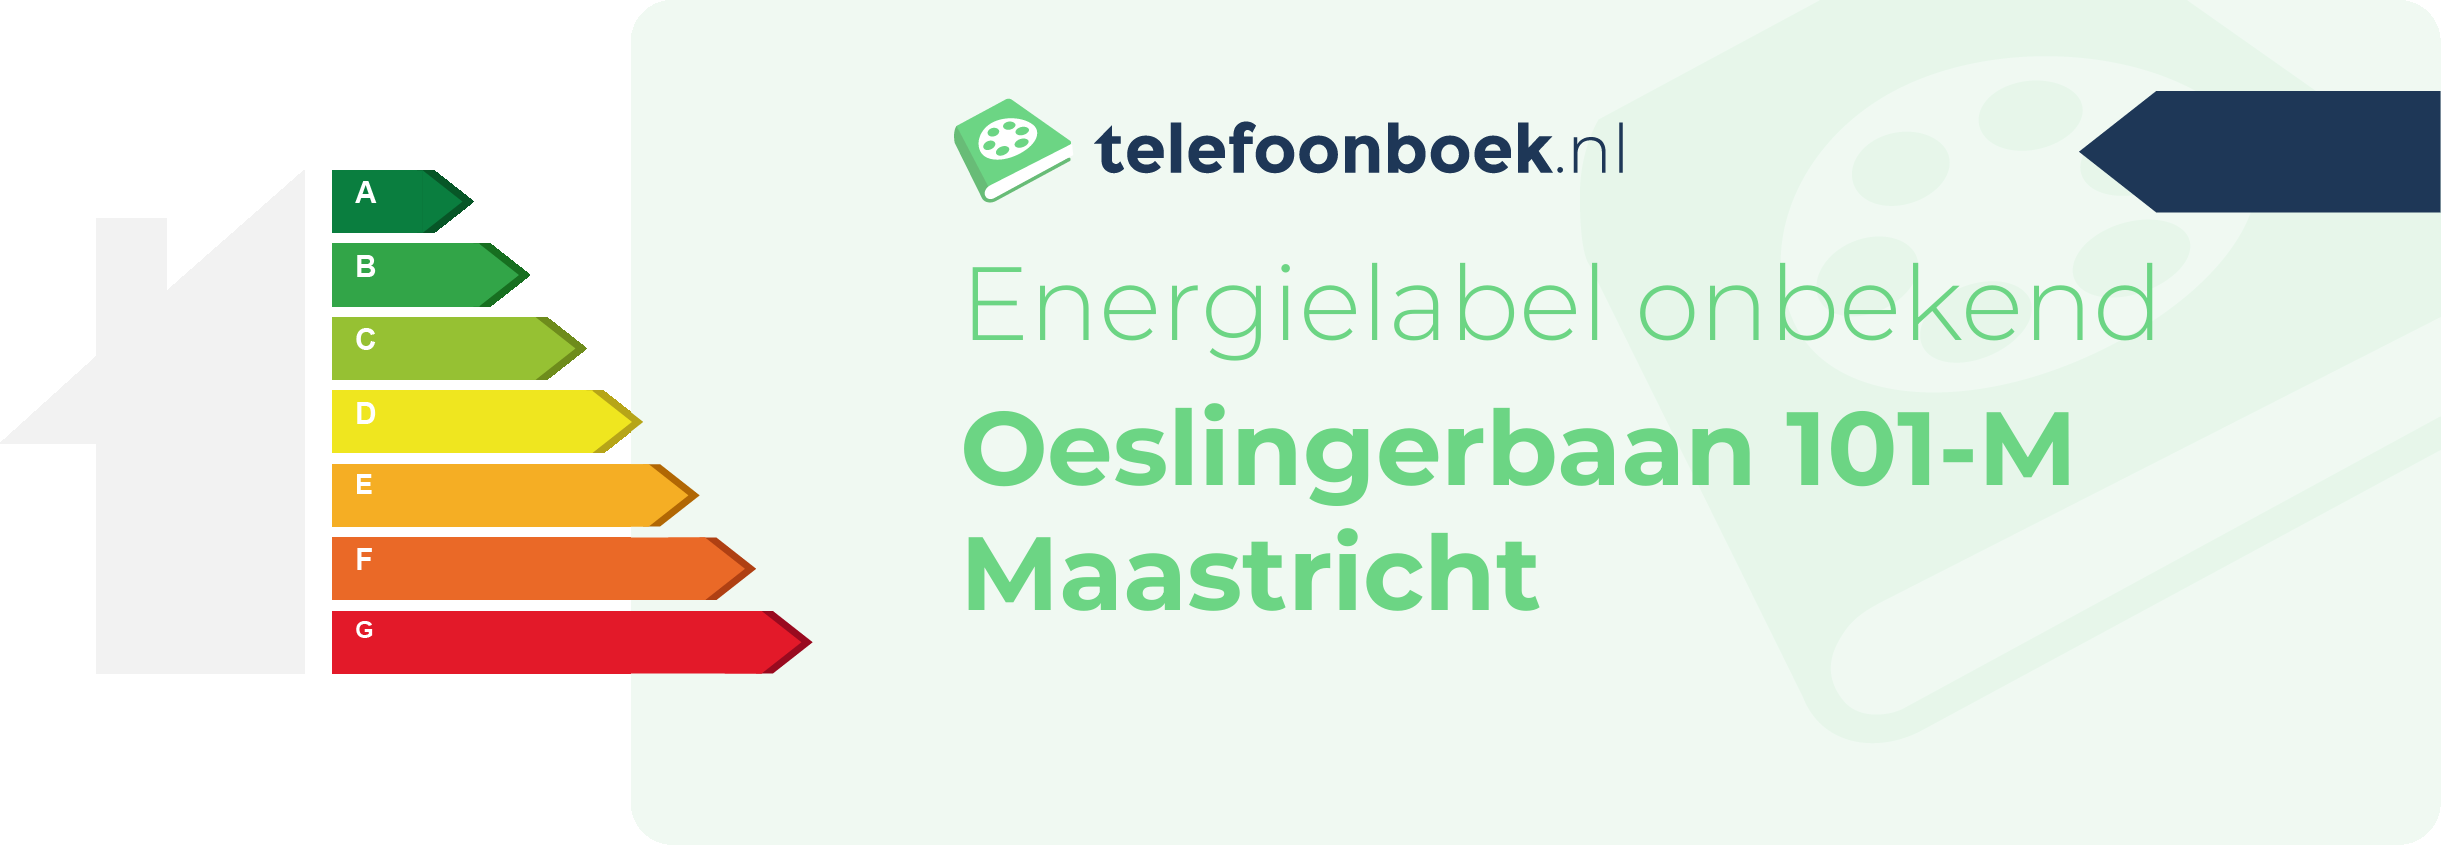 Energielabel Oeslingerbaan 101-M Maastricht